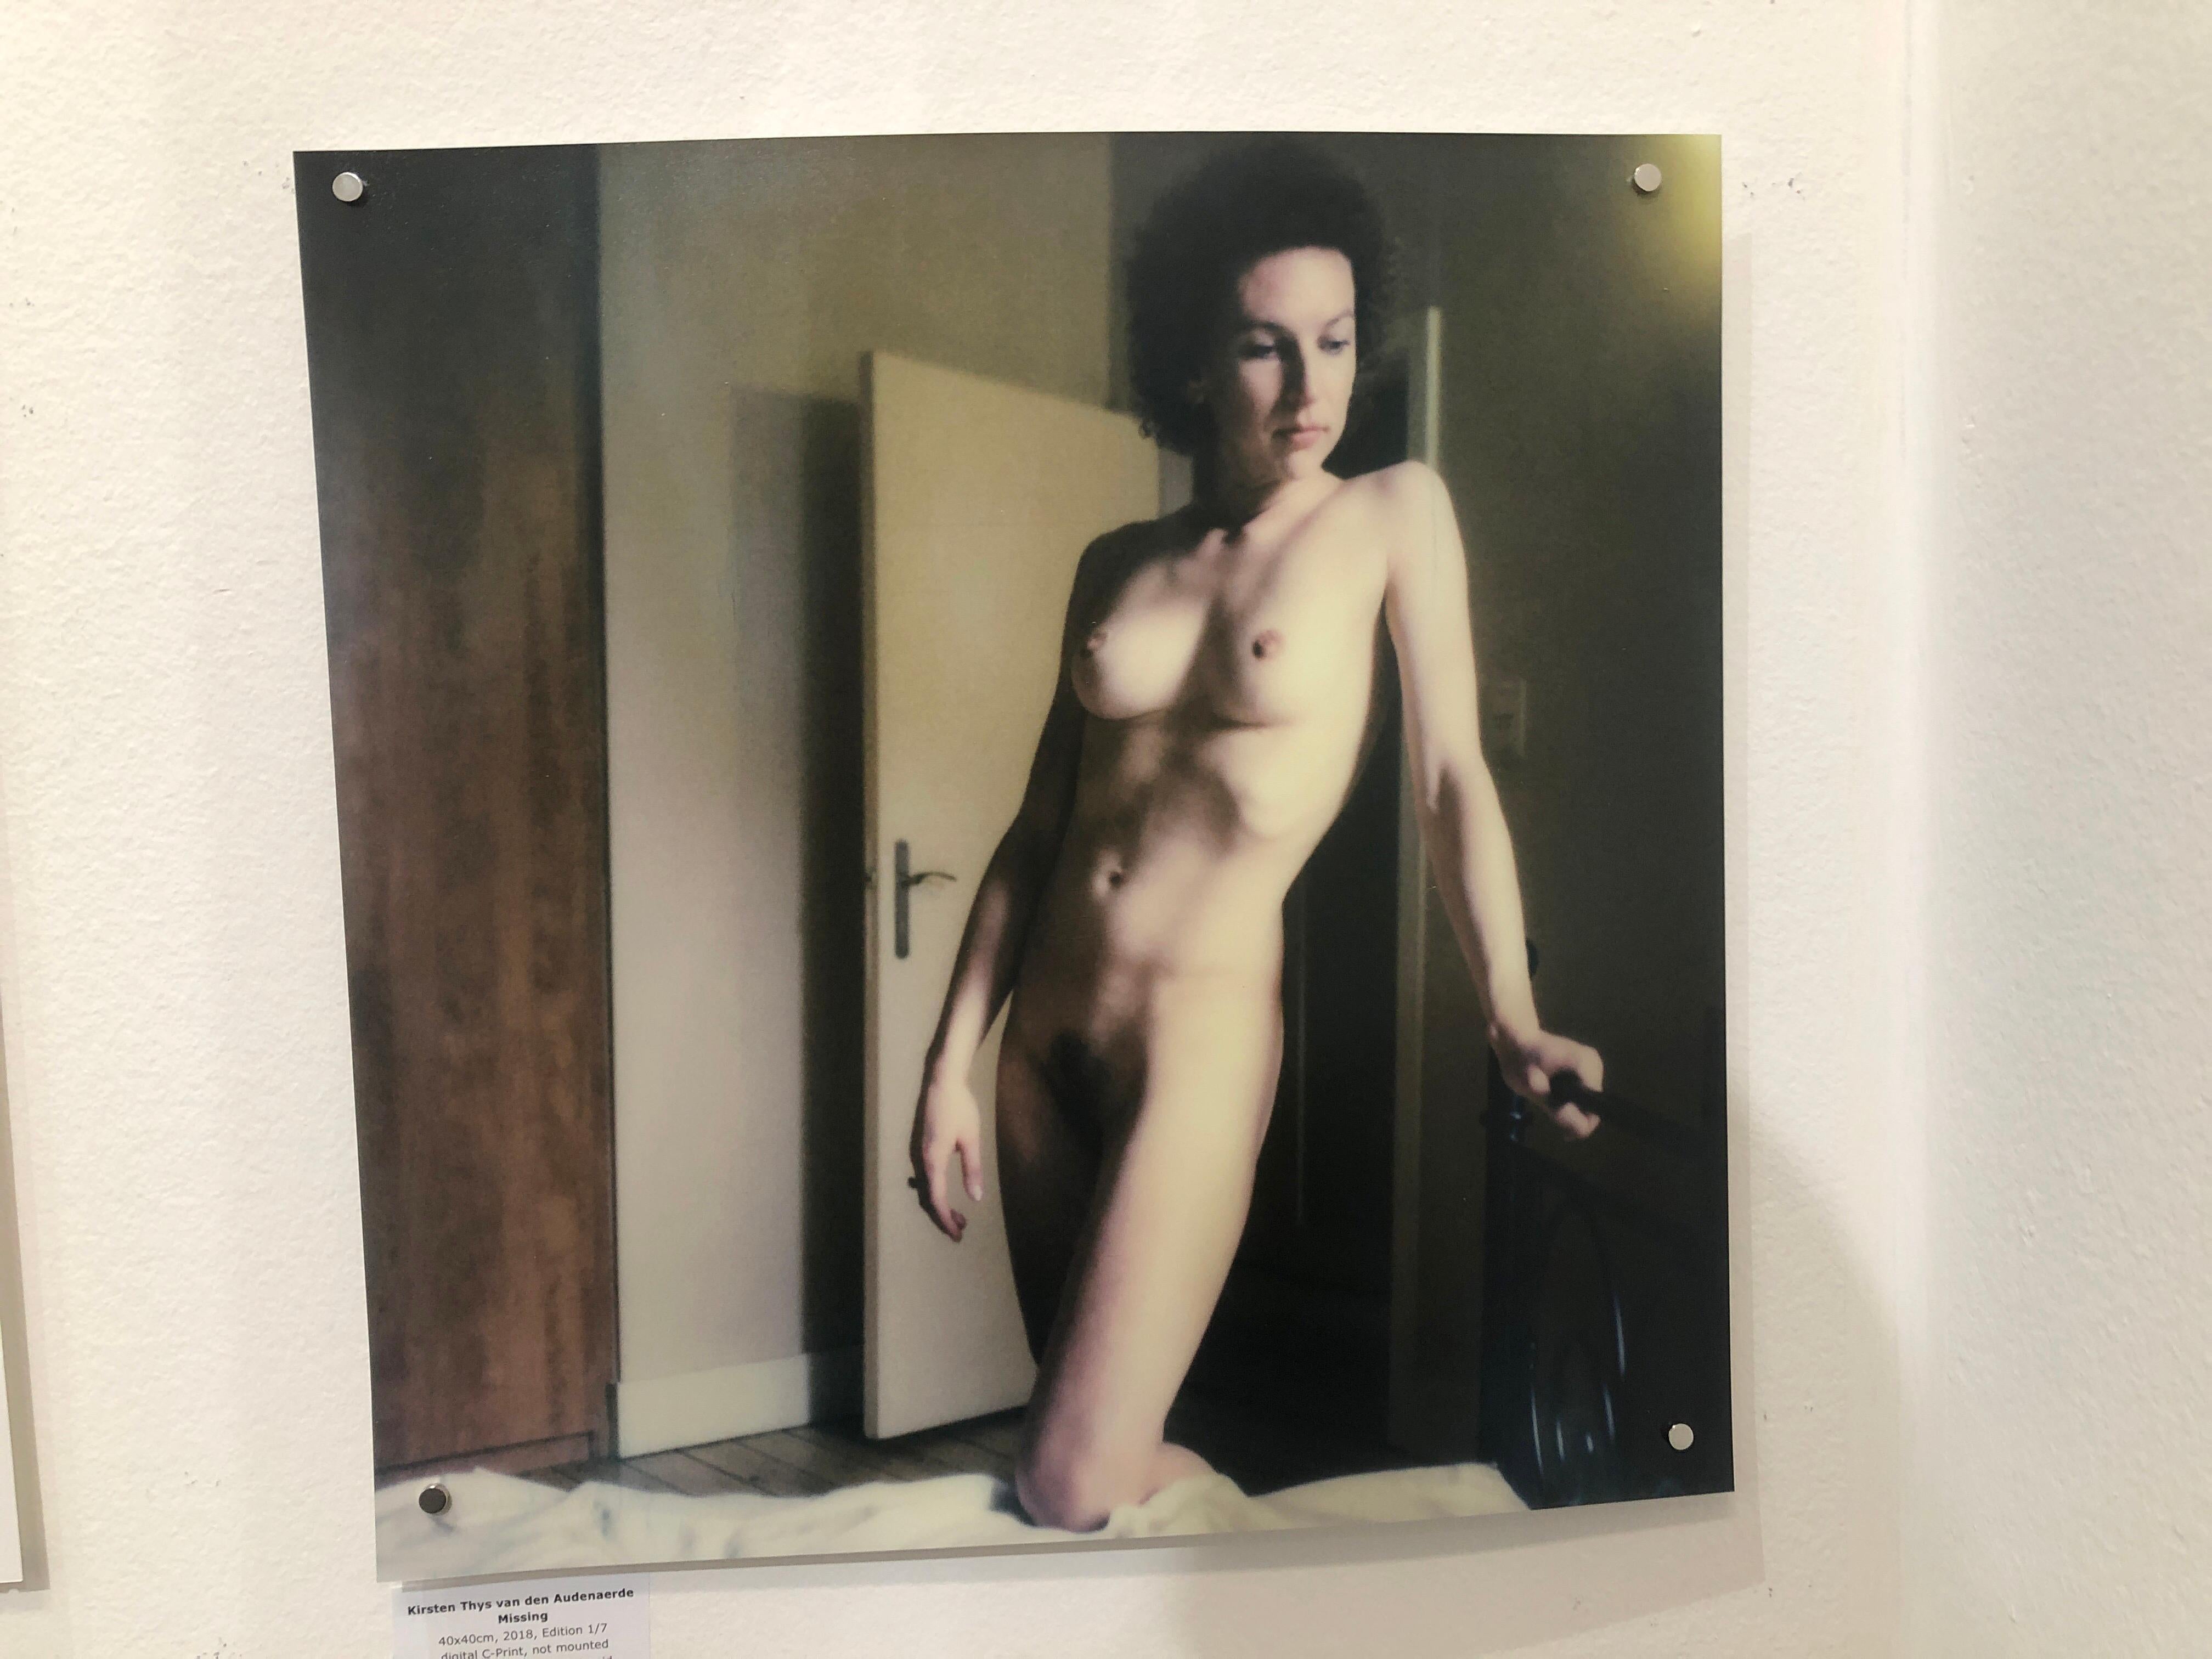 Missing - 40x40cm, 21st Century, Polaroid, Nude, Women - Contemporary Photograph by Kirsten Thys van den Audenaerde